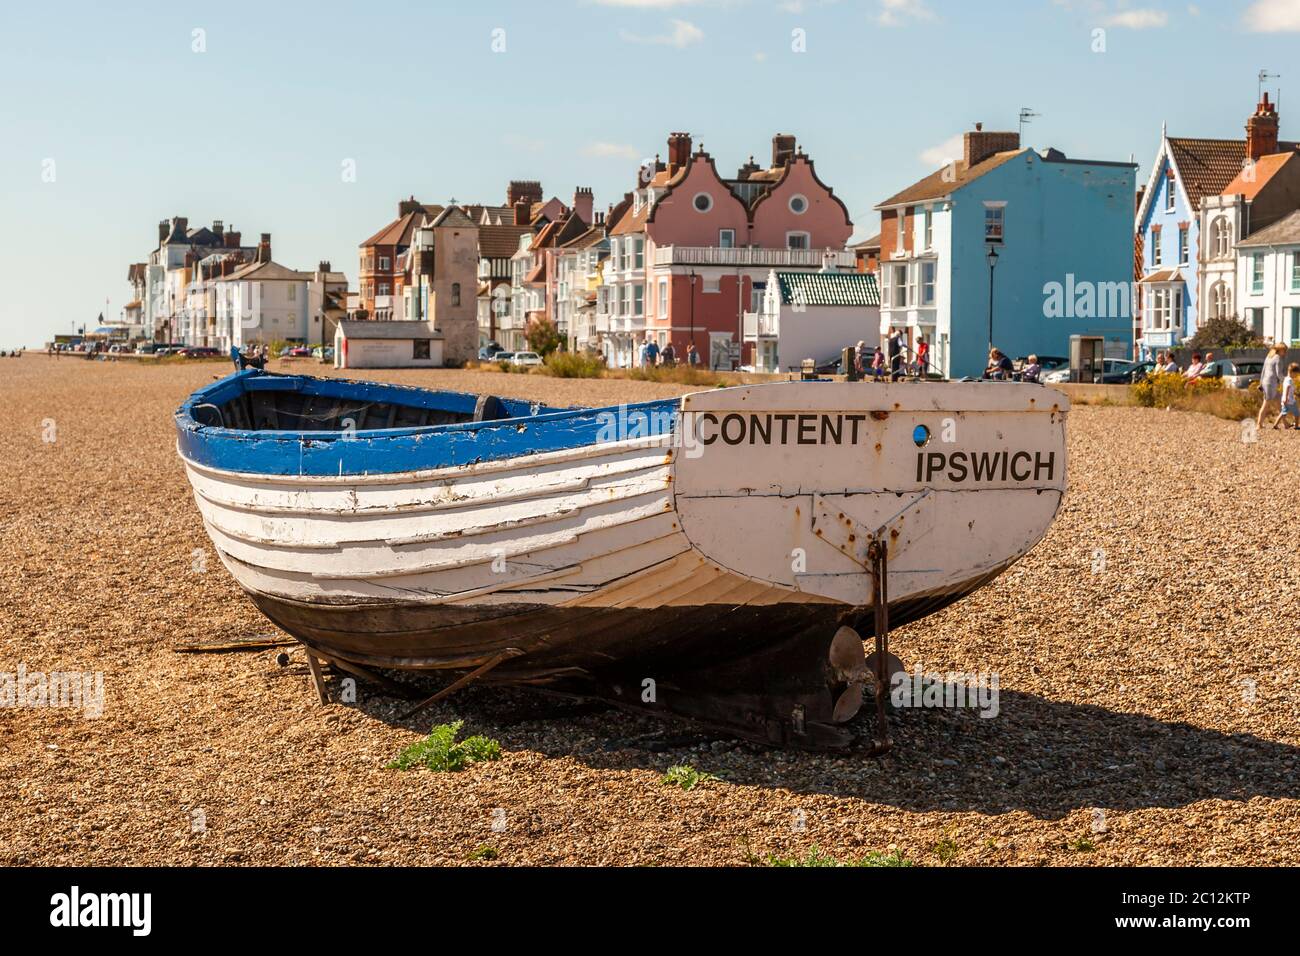 Una barca chiamata Content Ipswich si trova sulla spiaggia di East Suffolk, Inghilterra Foto Stock